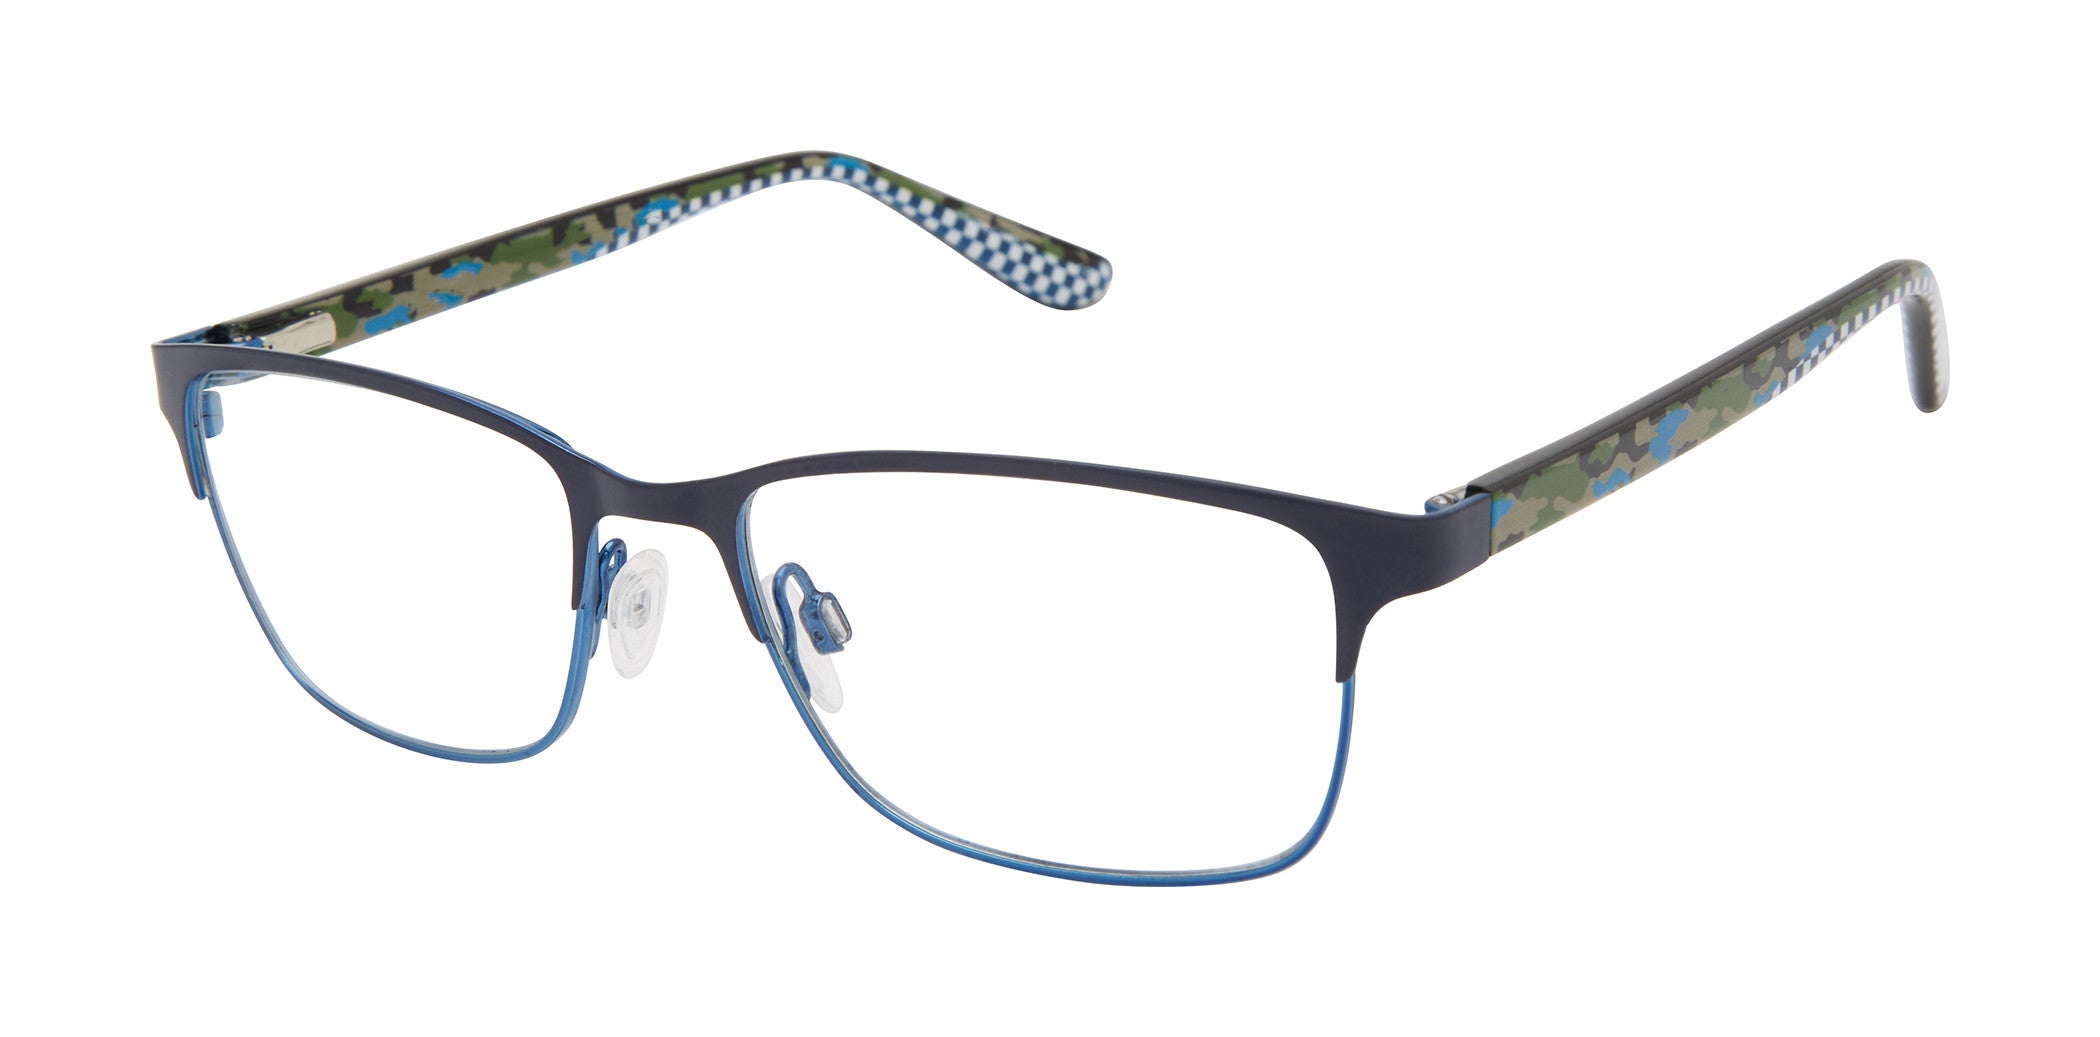 Zuma ZR016 Rock Eyeglass Frames - Blue